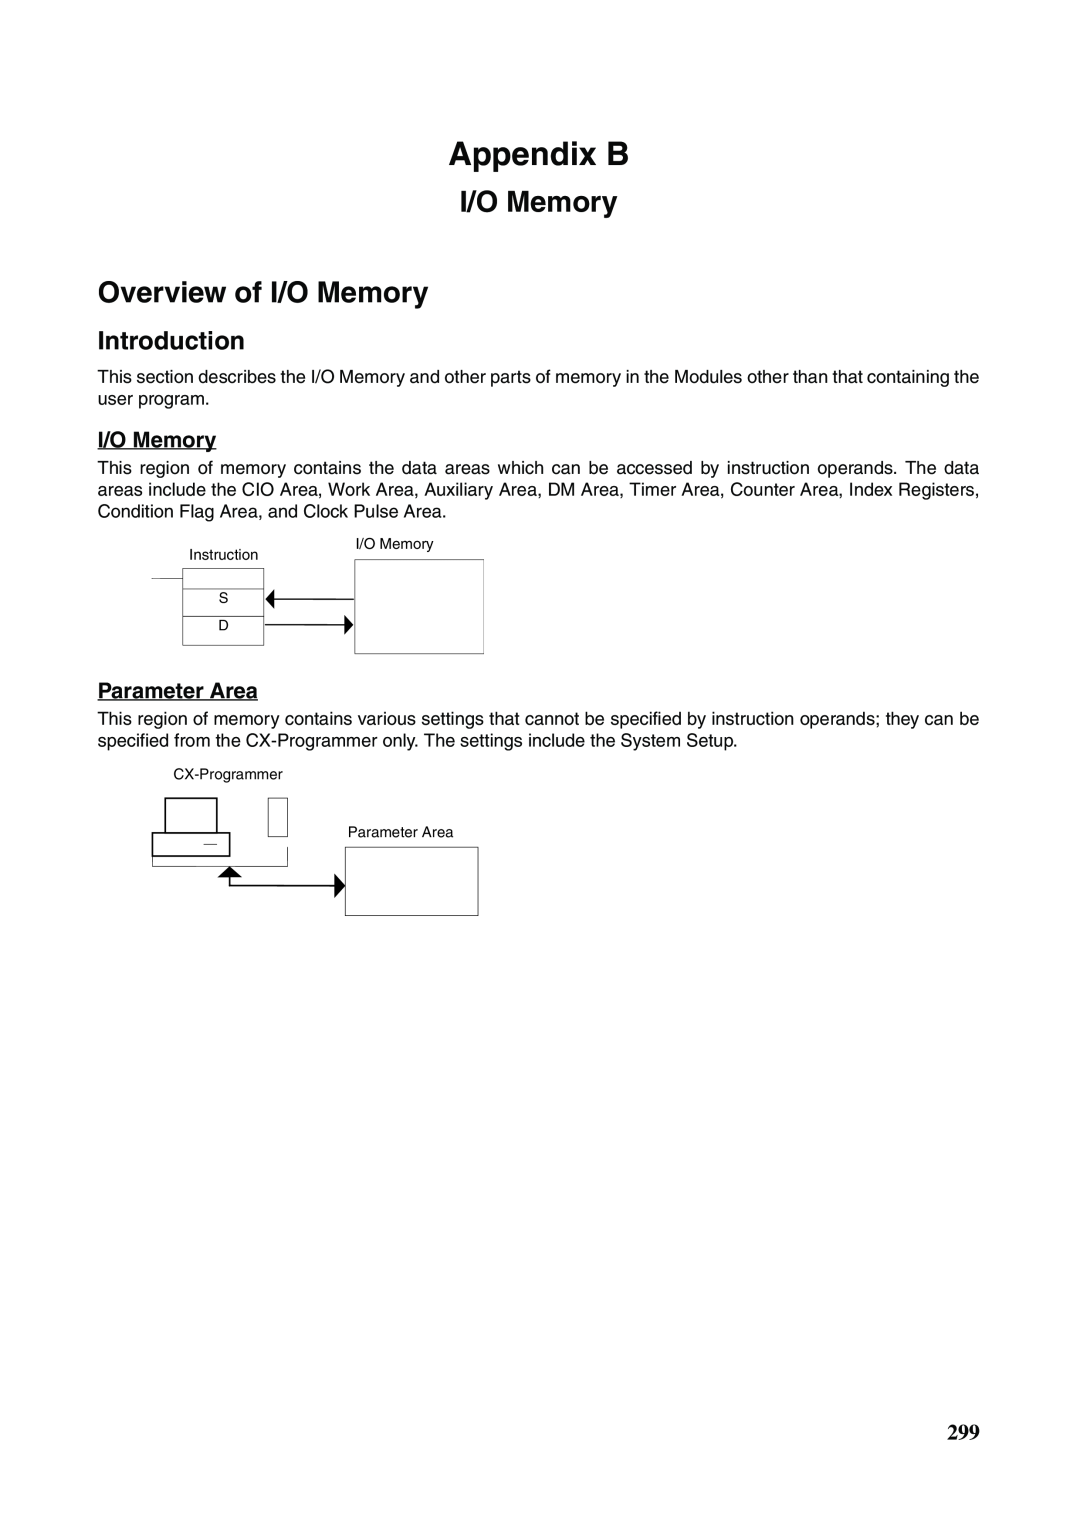 Omron FQM1-MMA21, FQM1-CM001, FQM1-MMP21 operation manual Appendix B, I/O Memory Overview of I/O Memory, Parameter Area 